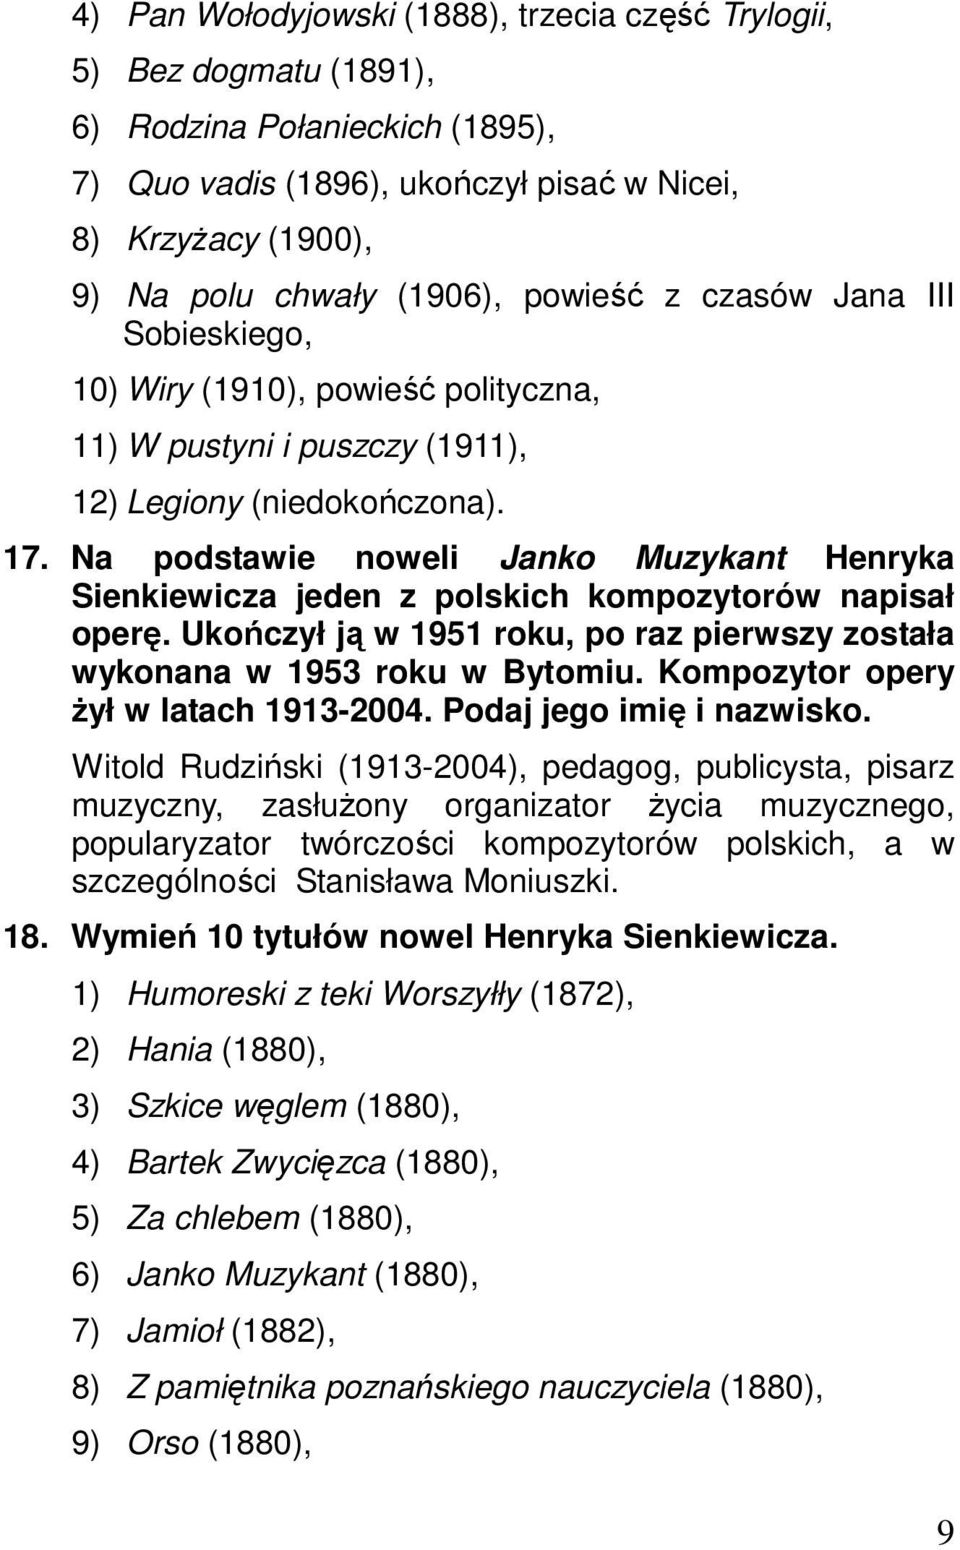 Na podstawie noweli Janko Muzykant Henryka Sienkiewicza jeden z polskich kompozytorów napisał operę. Ukończył ją w 1951 roku, po raz pierwszy została wykonana w 1953 roku w Bytomiu.